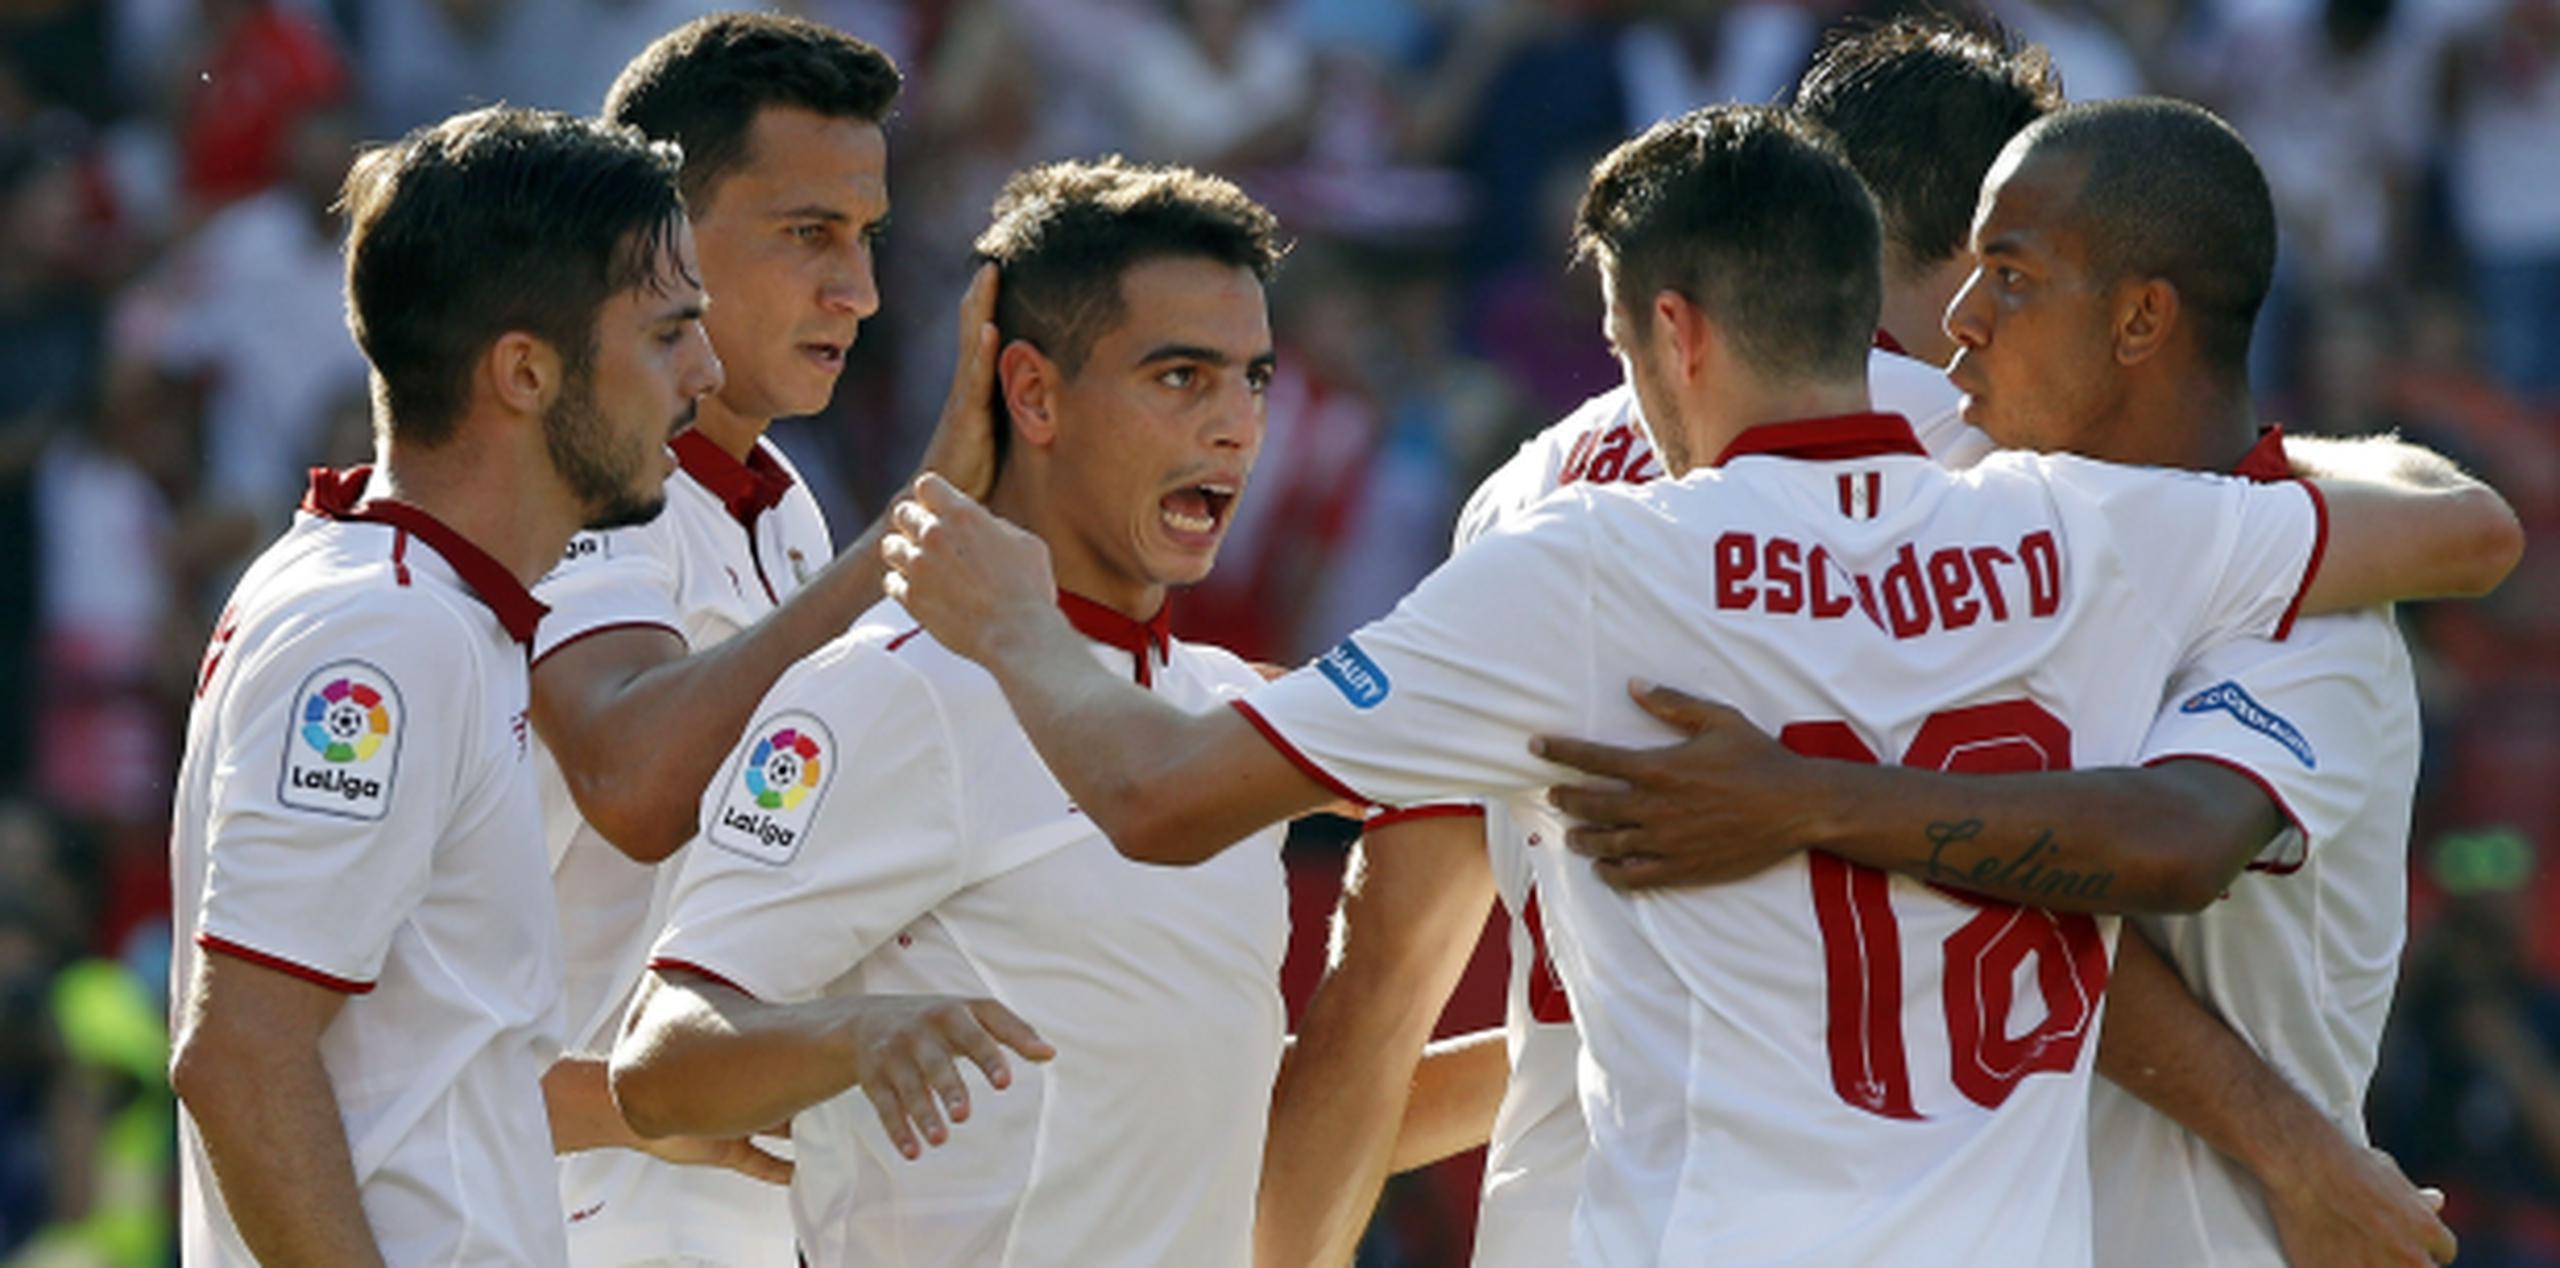 El delantero francés del Sevilla, Wissam Ben Yedder, celebra con sus compañeros tras marcar el gol de la victoria. (Agencia EFE)